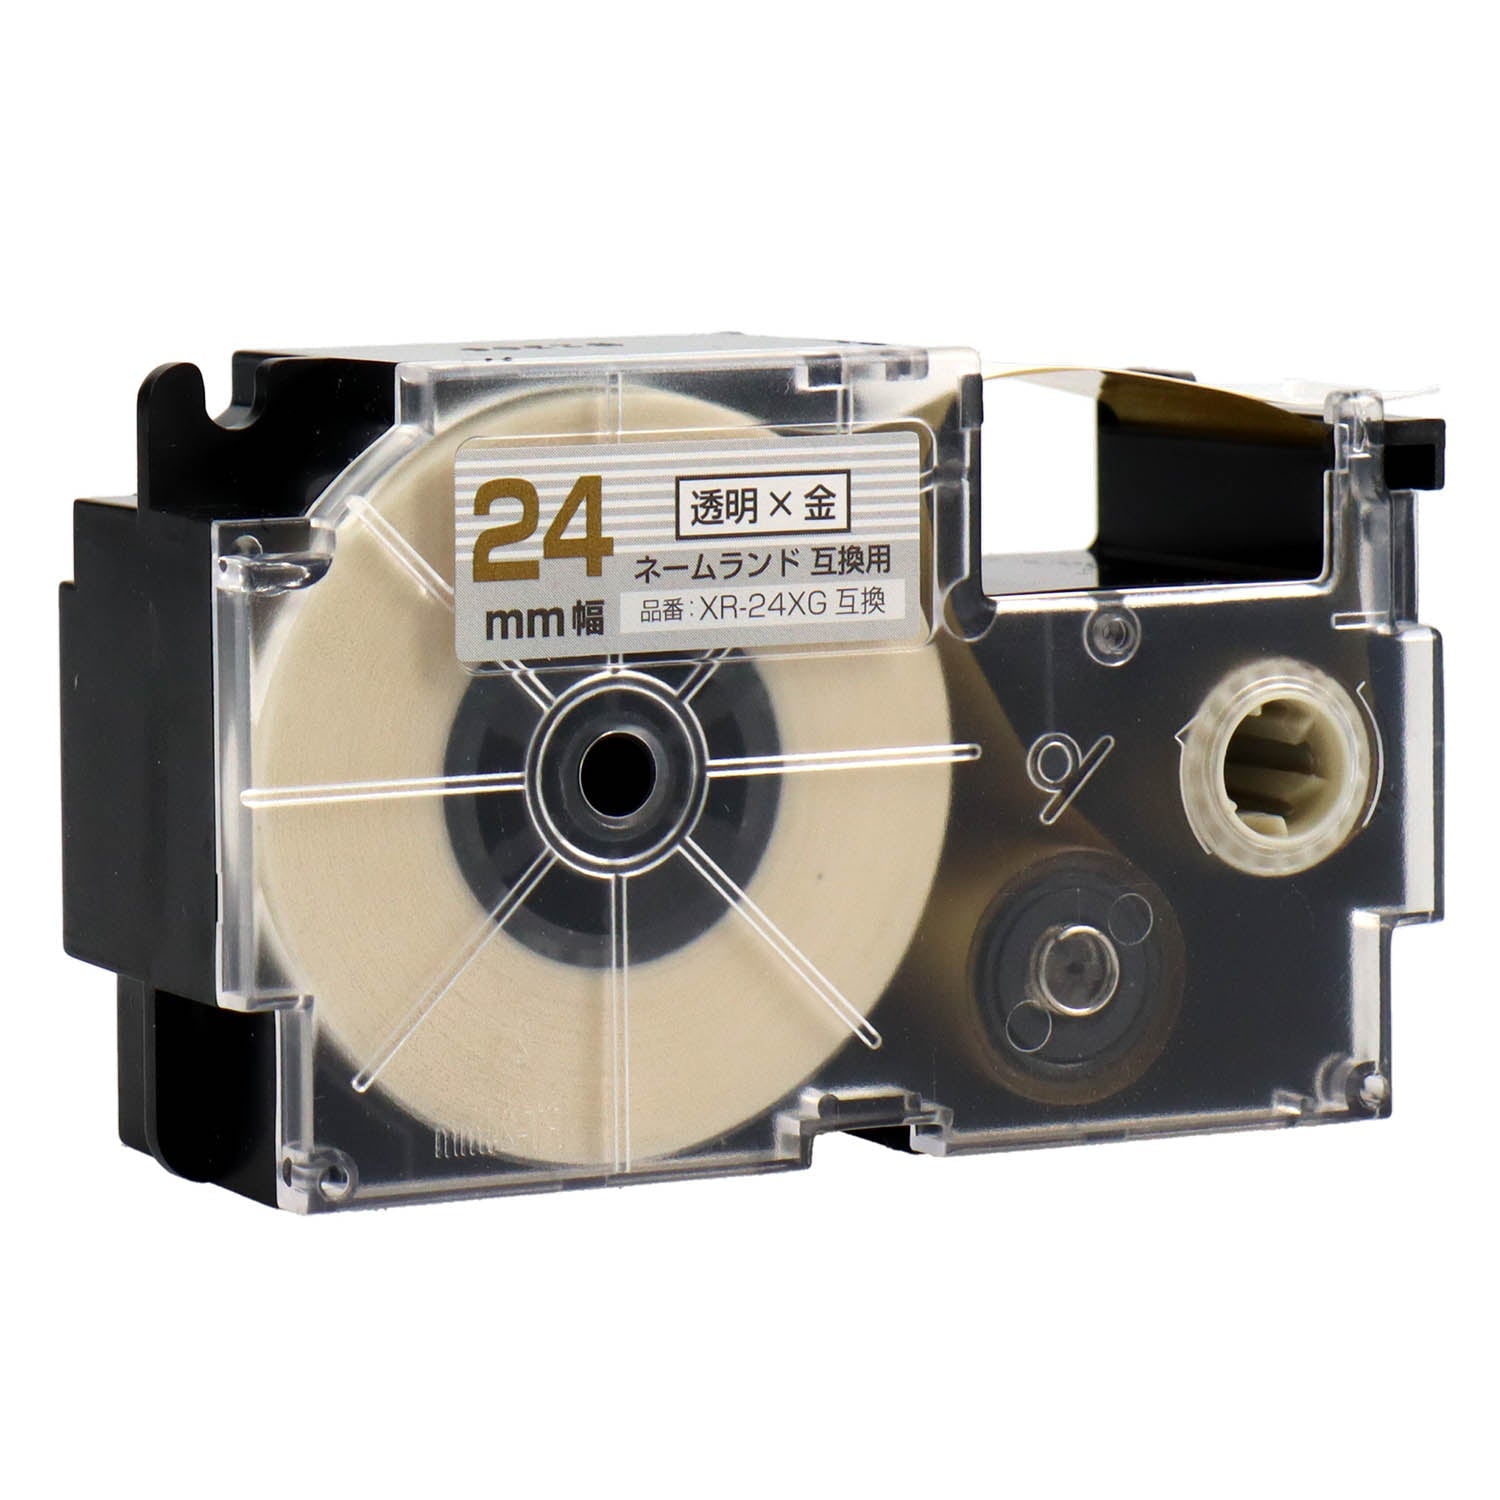 ネームランド用互換テープカートリッジ 透明×金文字 24mm